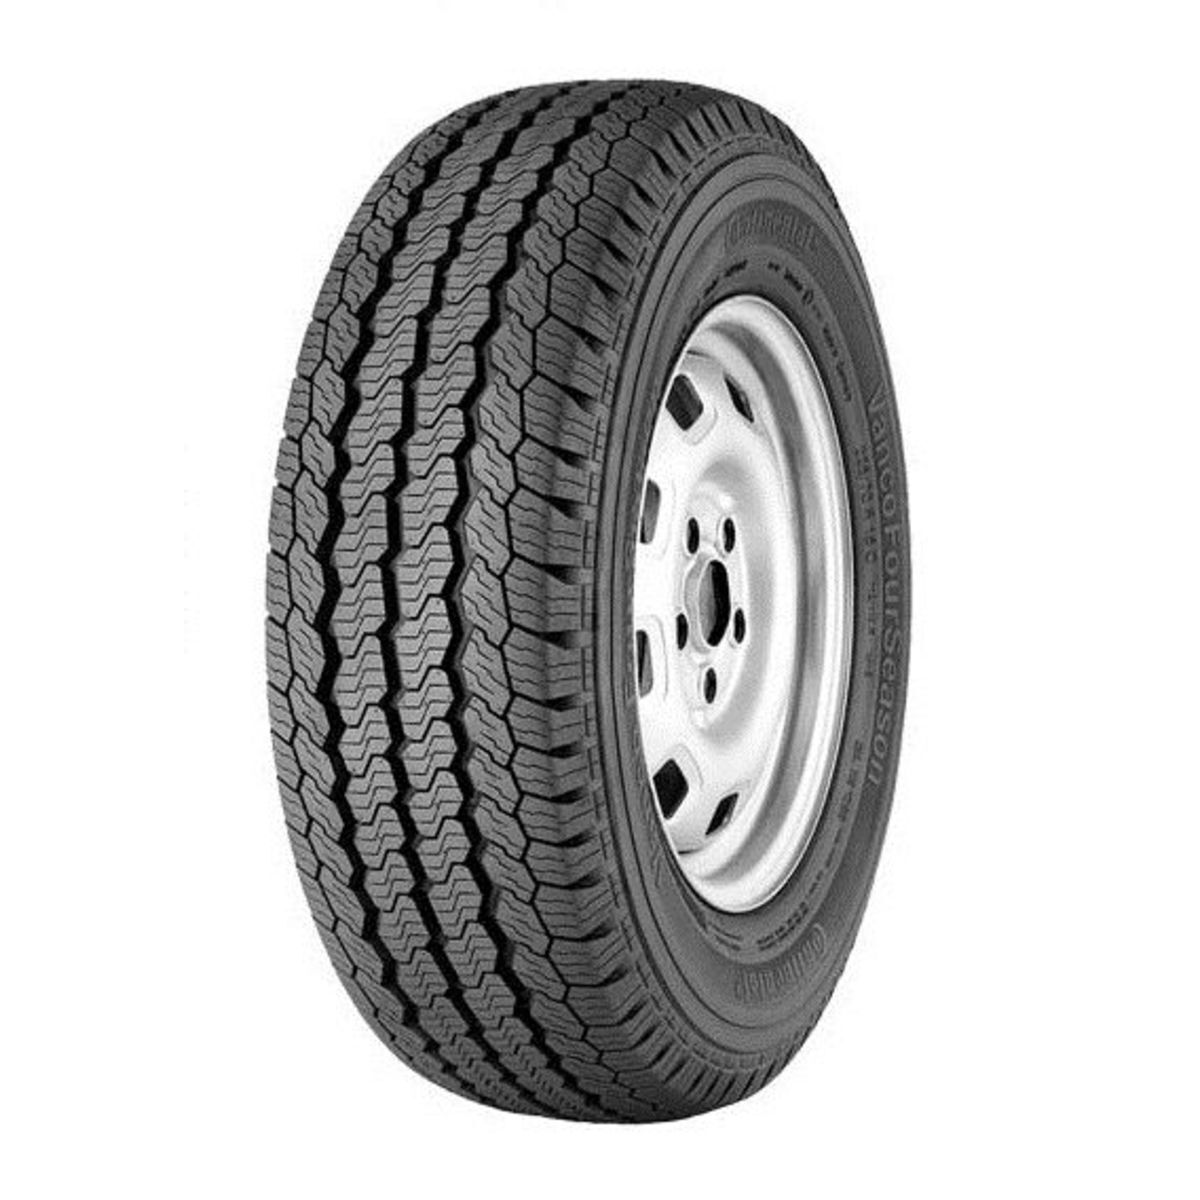 Neumáticos de verano CONTINENTAL VancoFourSeason 225/55R17 RF 101H